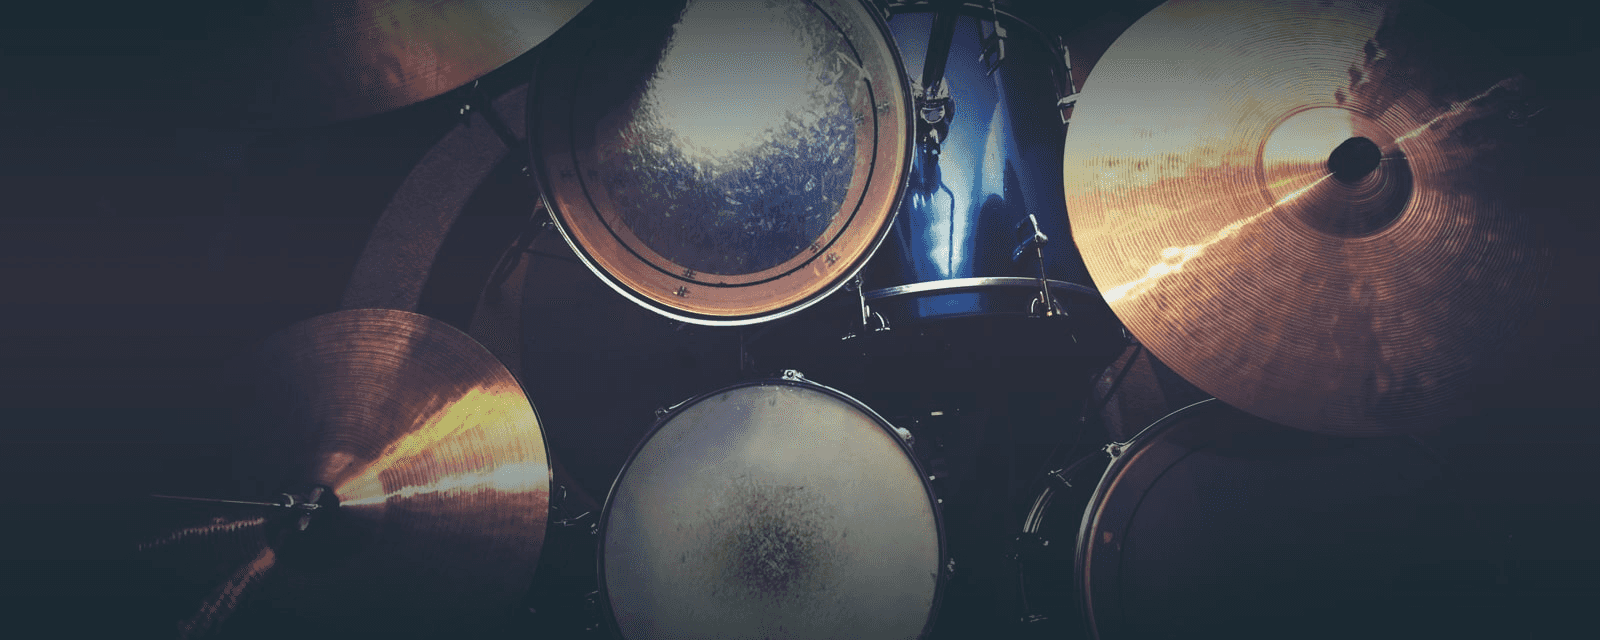 Schlagzeug spielen!